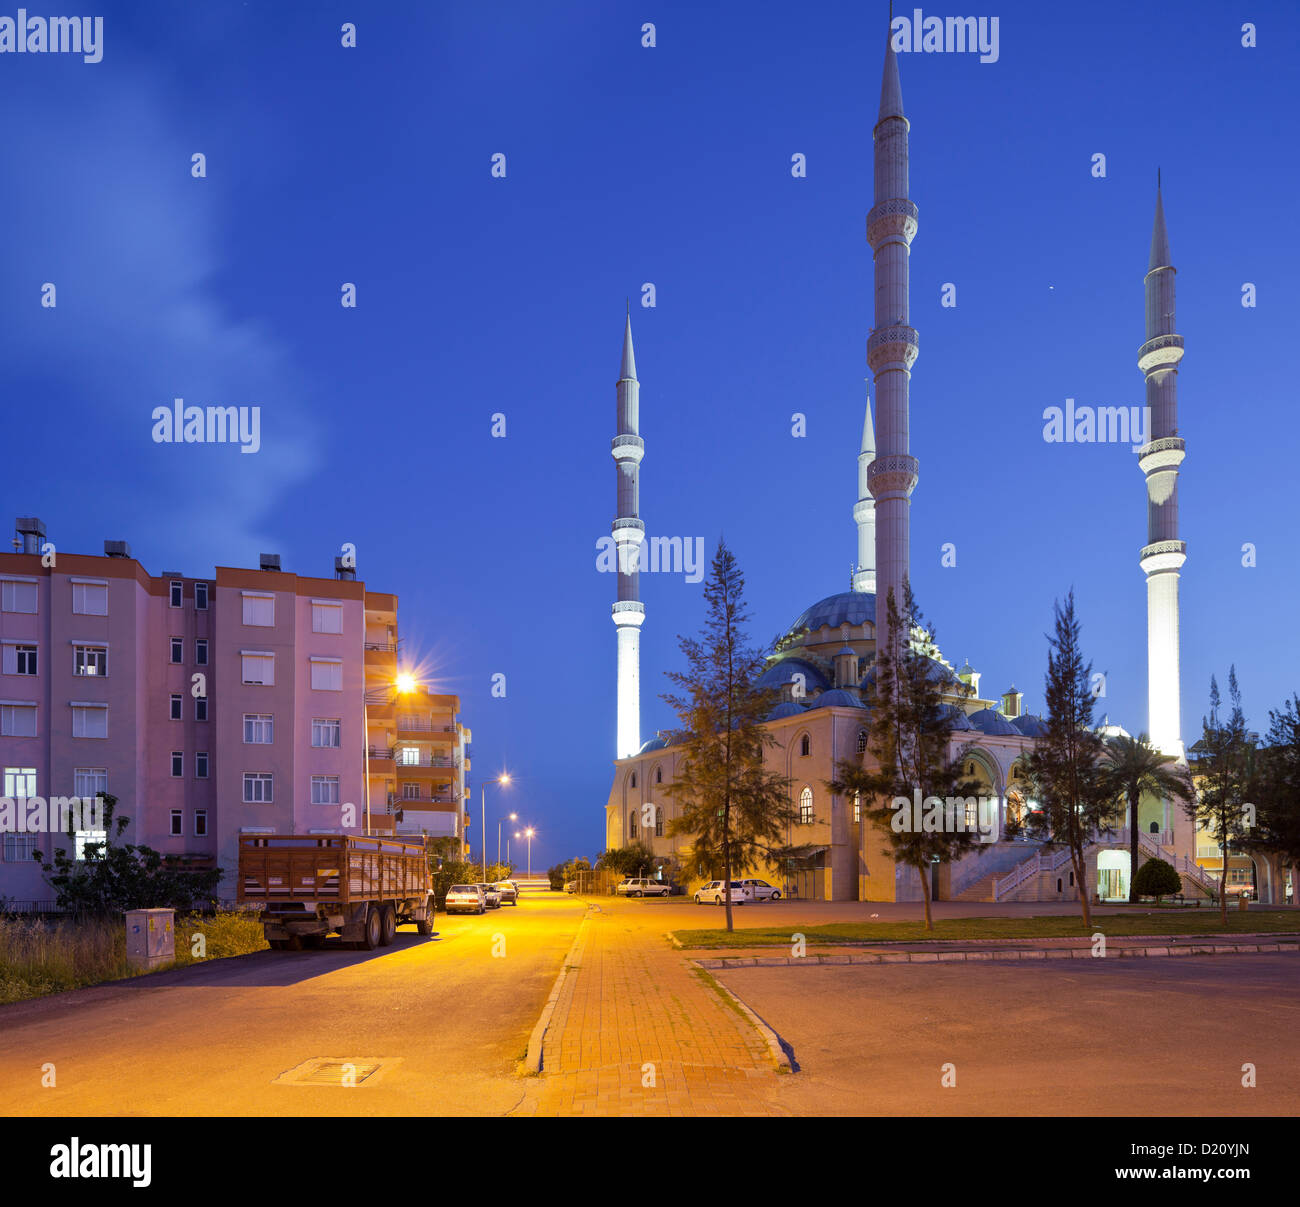 Wohnhäuser und Moschee in Manavgat, Antalya, türkische Riviera, Türkei Stockfoto